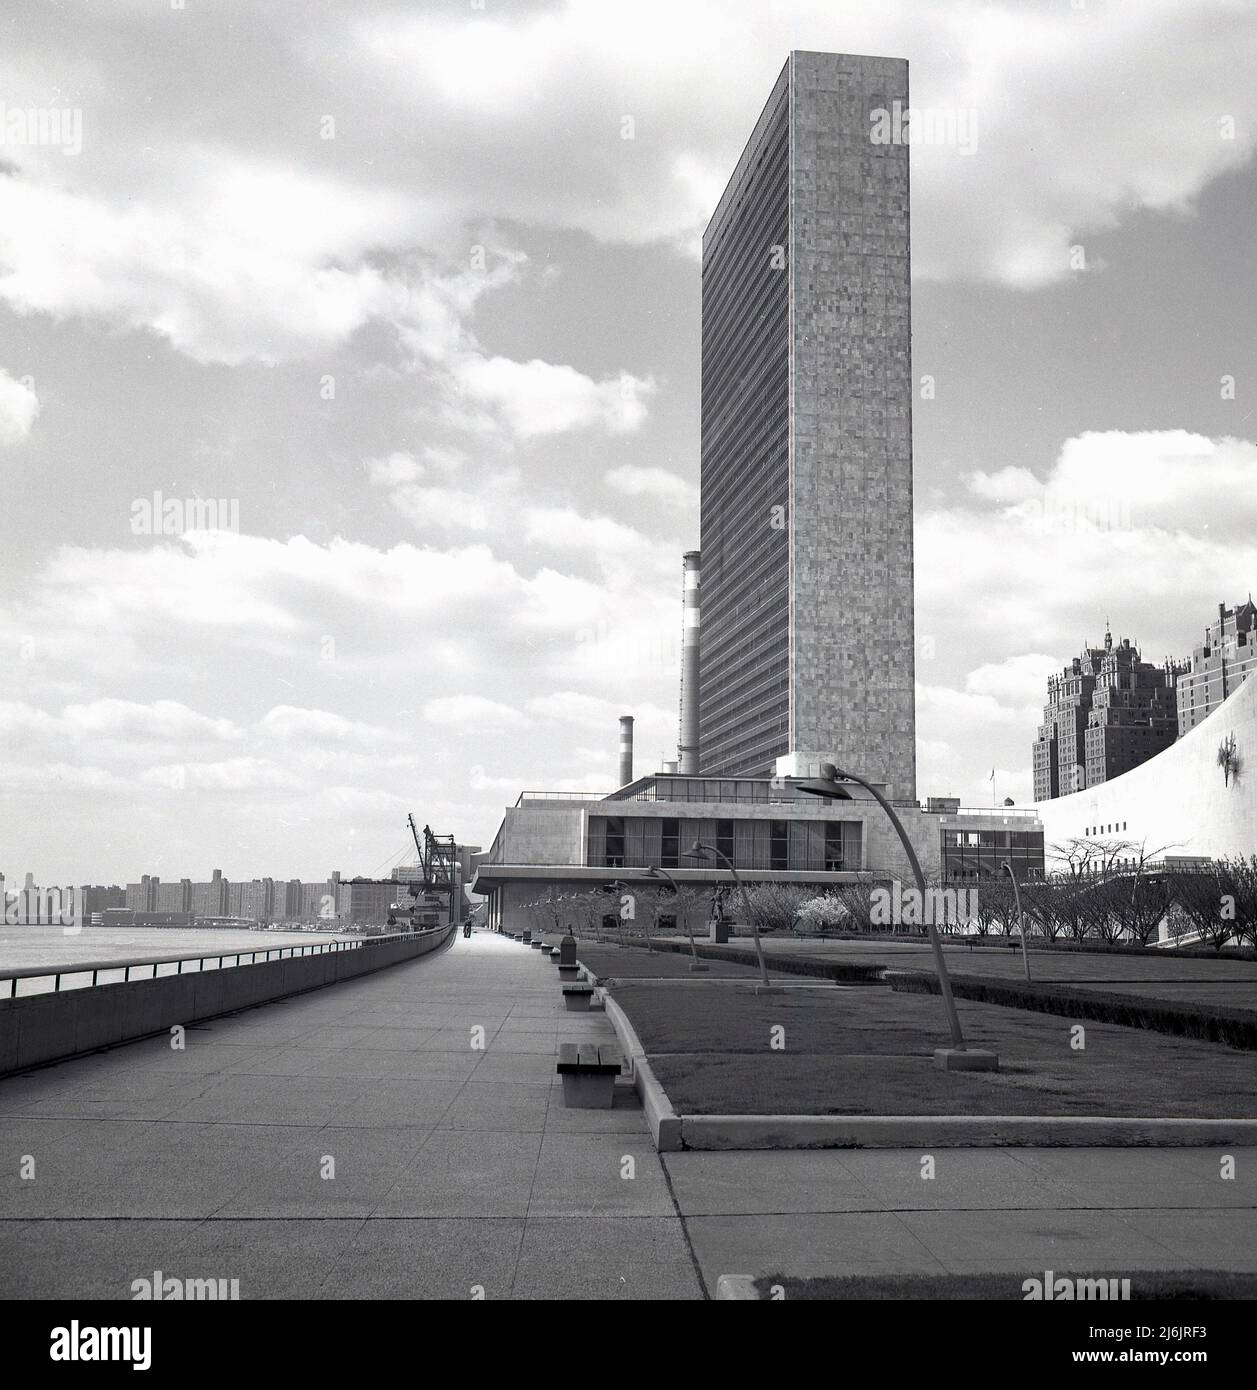 1950s, historique, le siège des Nations Unies, New York City, NY, USA. Haut de 39 étages, le grand gratte-ciel est le bâtiment du Secrétariat qui a été conçu par Oscar Niemeyer et le Corbusier et achevé en 1950. Plusieurs autres bâtiments constituent le complexe de l'ONU, qui se trouve dans la région de Turtle Bay à Manhattan, sur une terre surplombant la rivière East. Banque D'Images